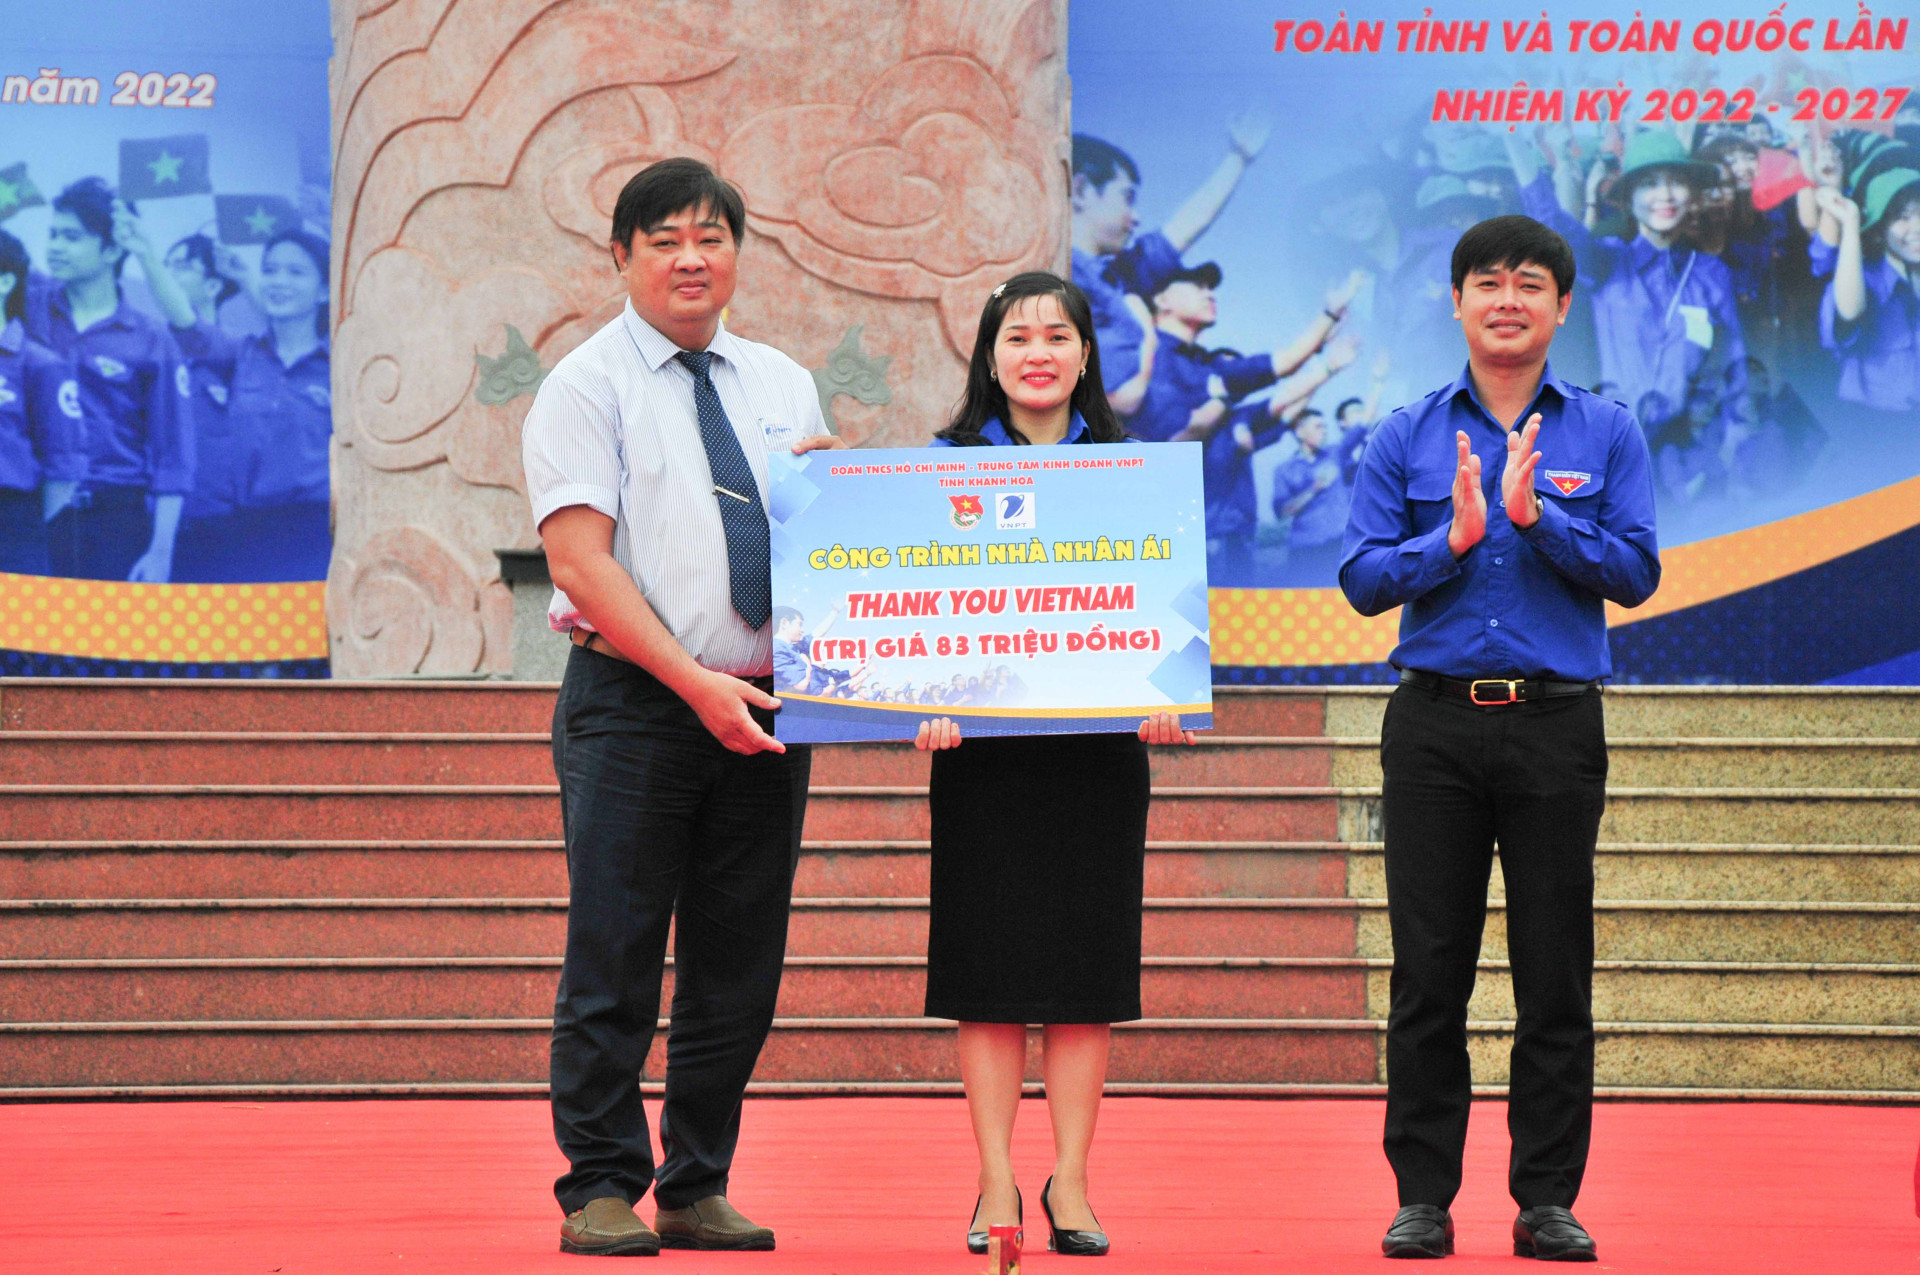 Tỉnh đoàn cùng Trung tâm kinh doanh VNPT Khánh Hoà trao biểu trưng công trình thanh niên “Nhà Nhân ái” cho Huyện đoàn Diên Khánh để thực hiện cho hộ gia đình khó khăn tại xã Diên Thọ